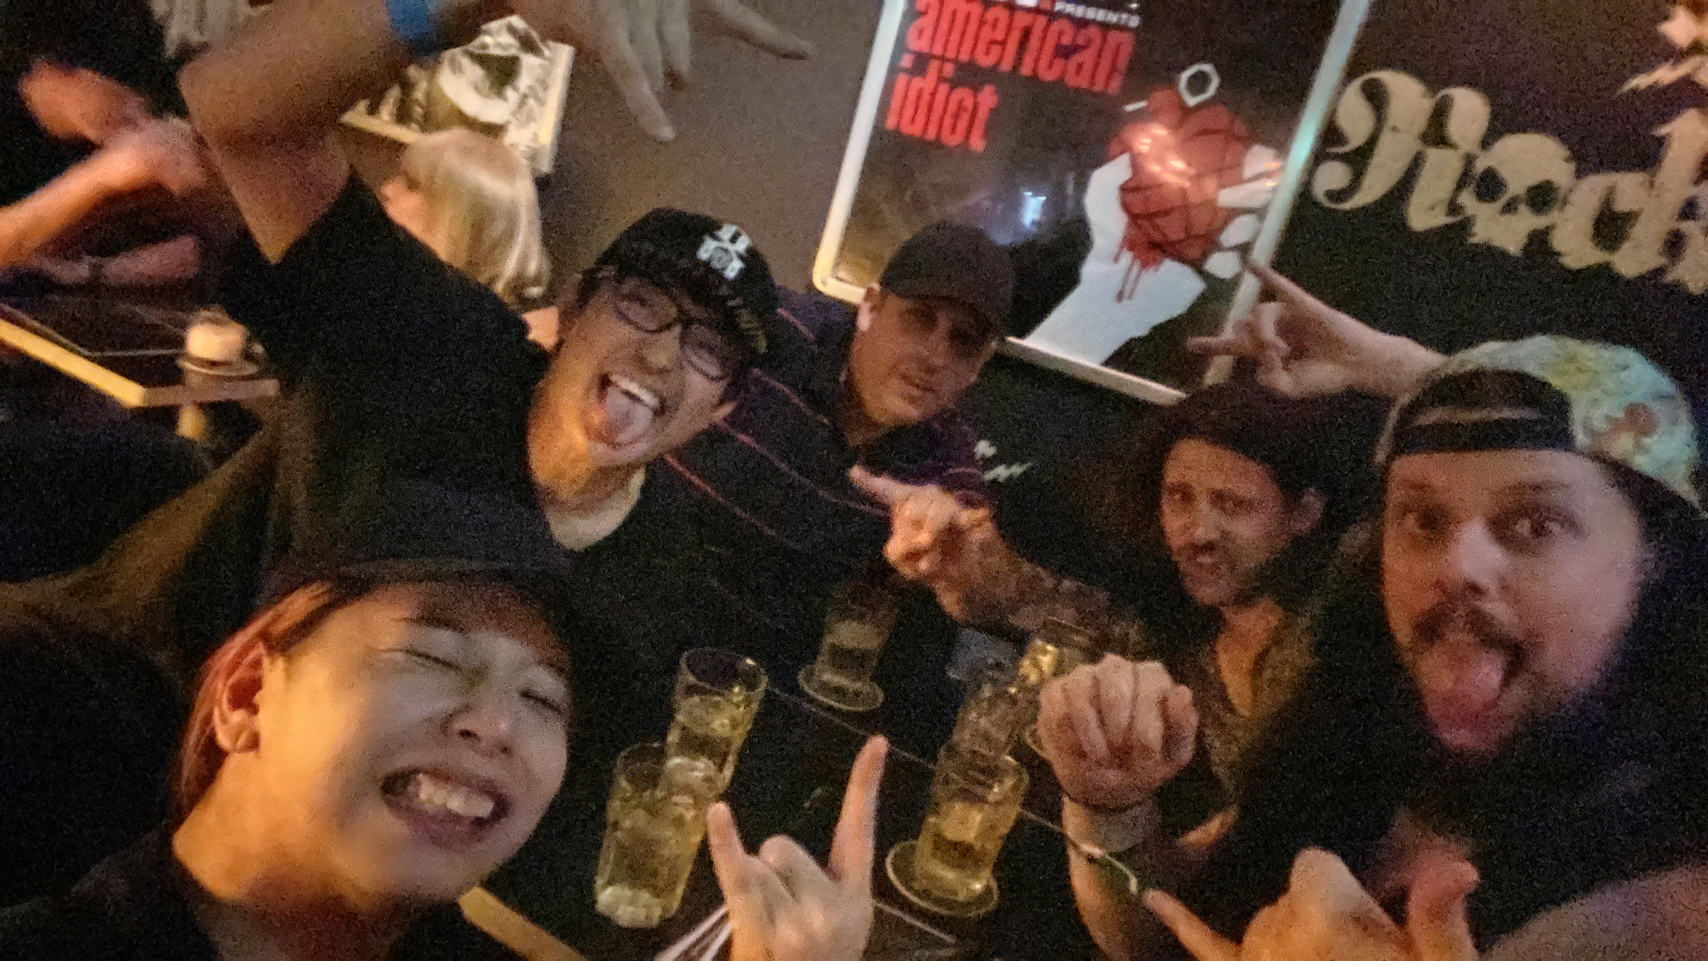 https://bar-rockaholic.jp/shibuya/blog/IMG_2810_0.JPG